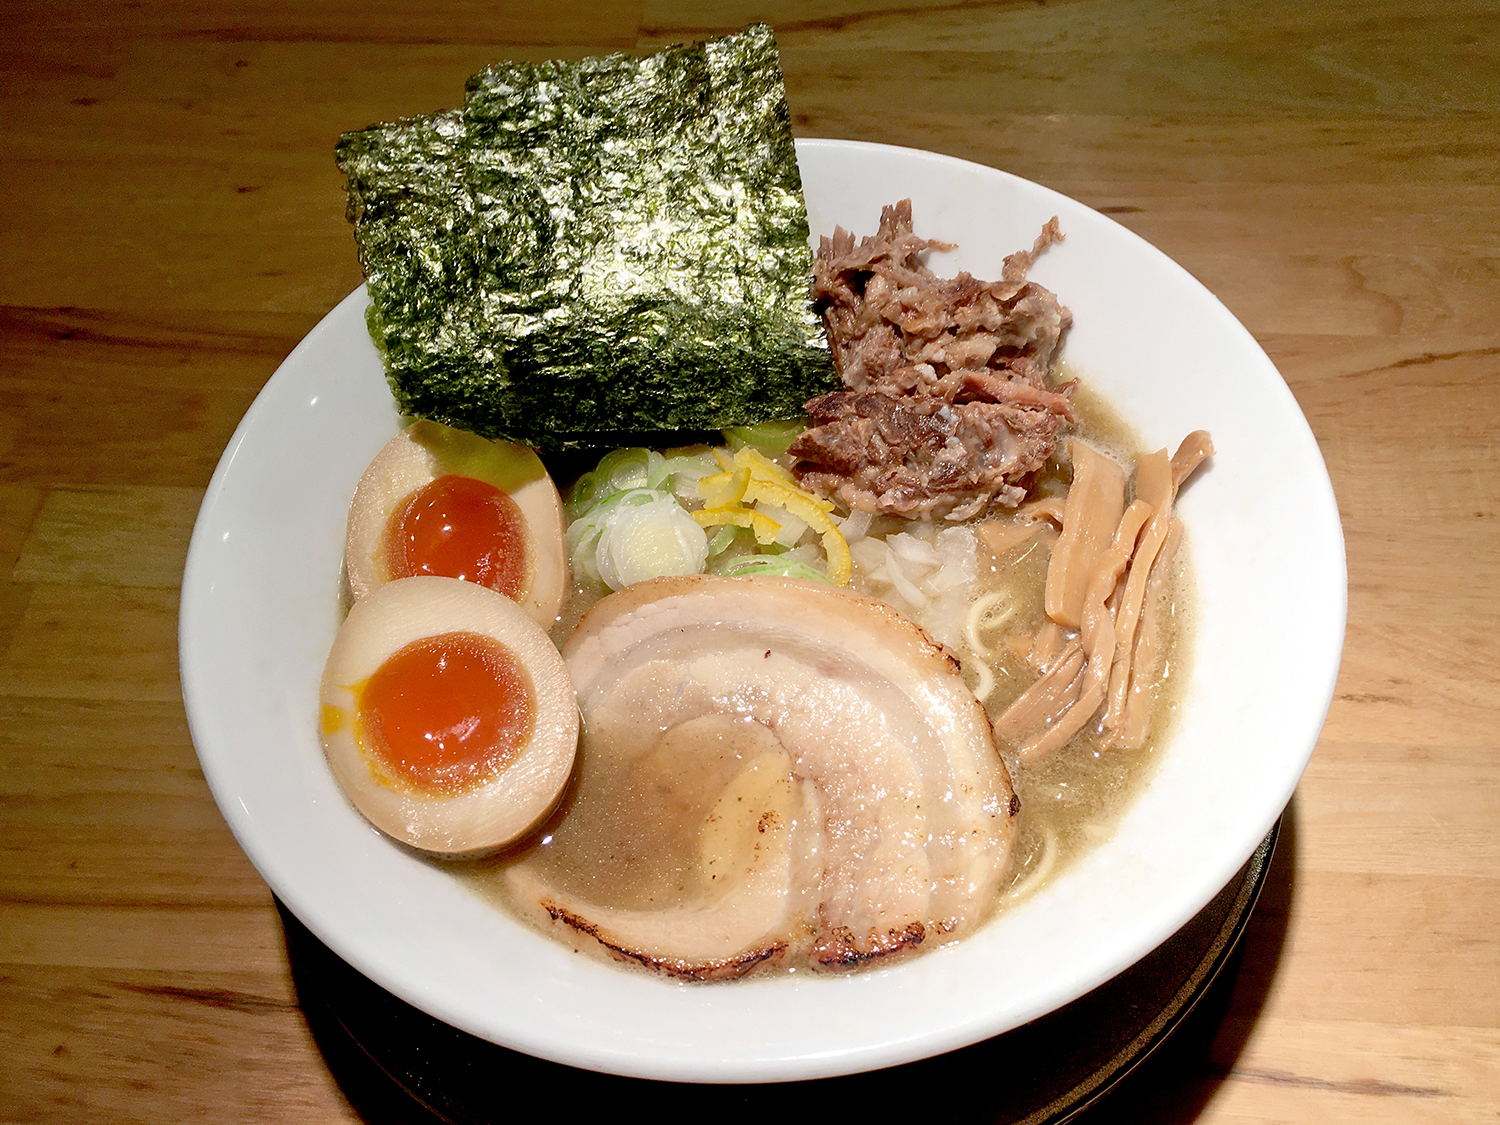 特製濃厚煮干しそば1100円。低加水麺の食感と濃厚スープが絶妙な組み合わせ。